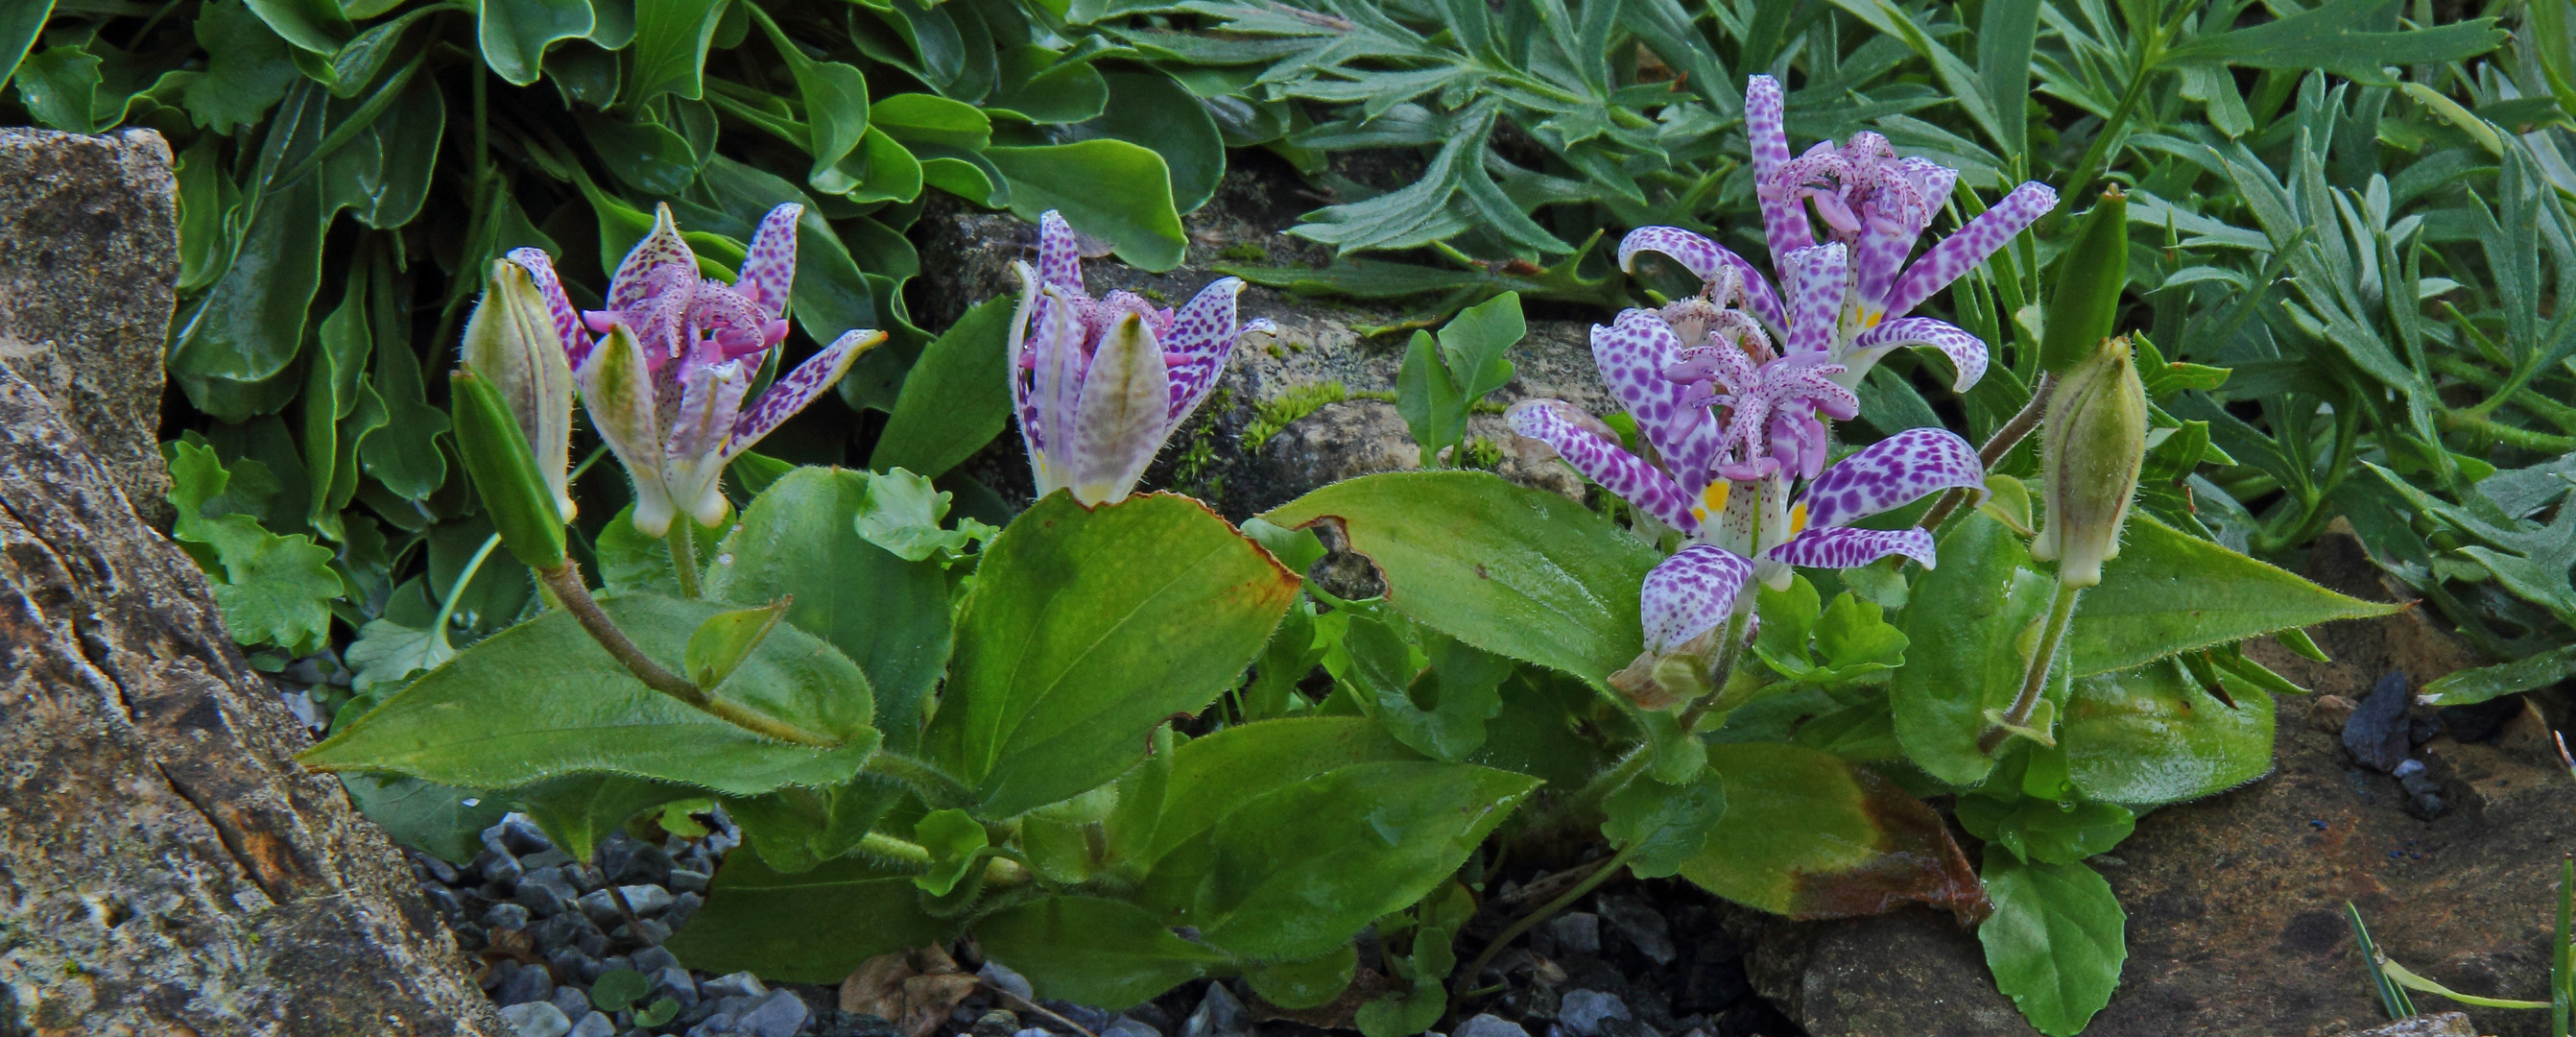 Krötenlilie.Tricyrtis hirta  aus Japan und Ostasien...  